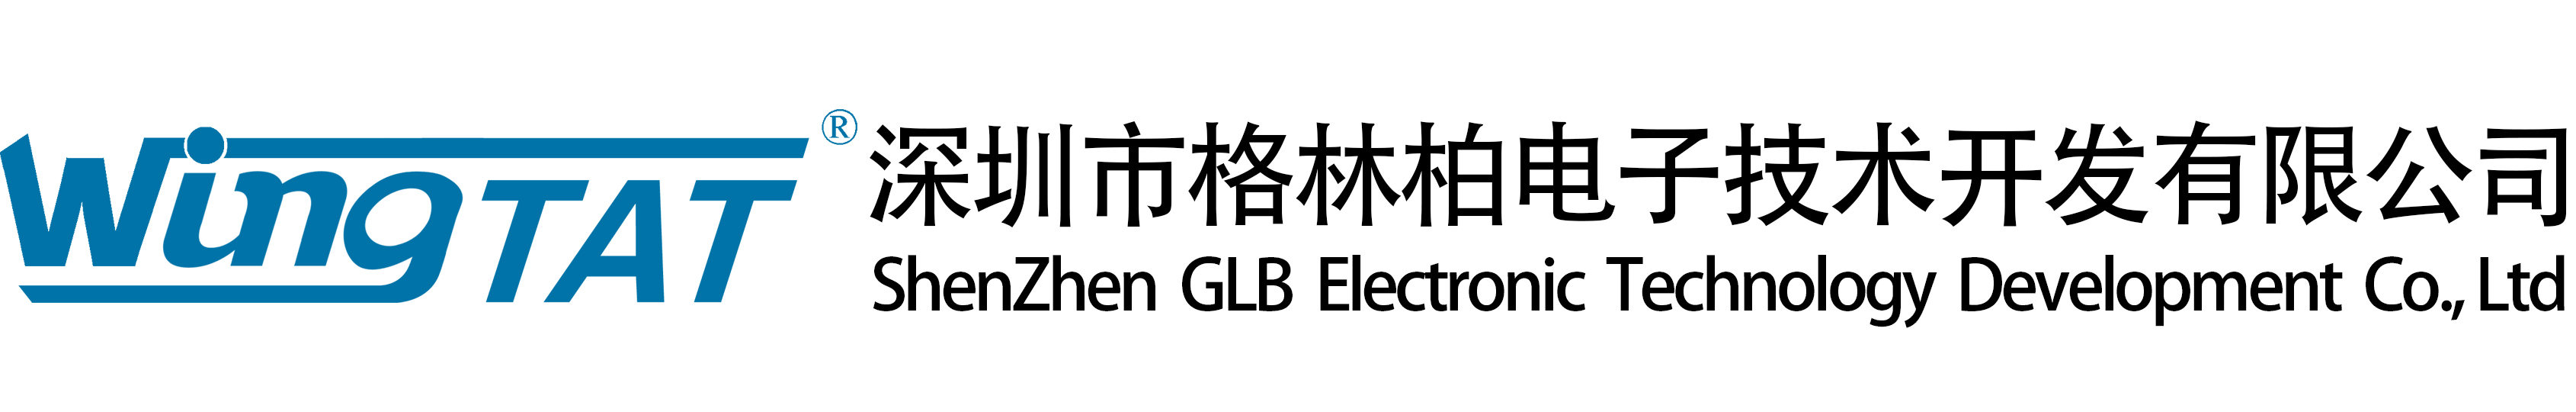 深圳市格林柏电子技术开发有限公司